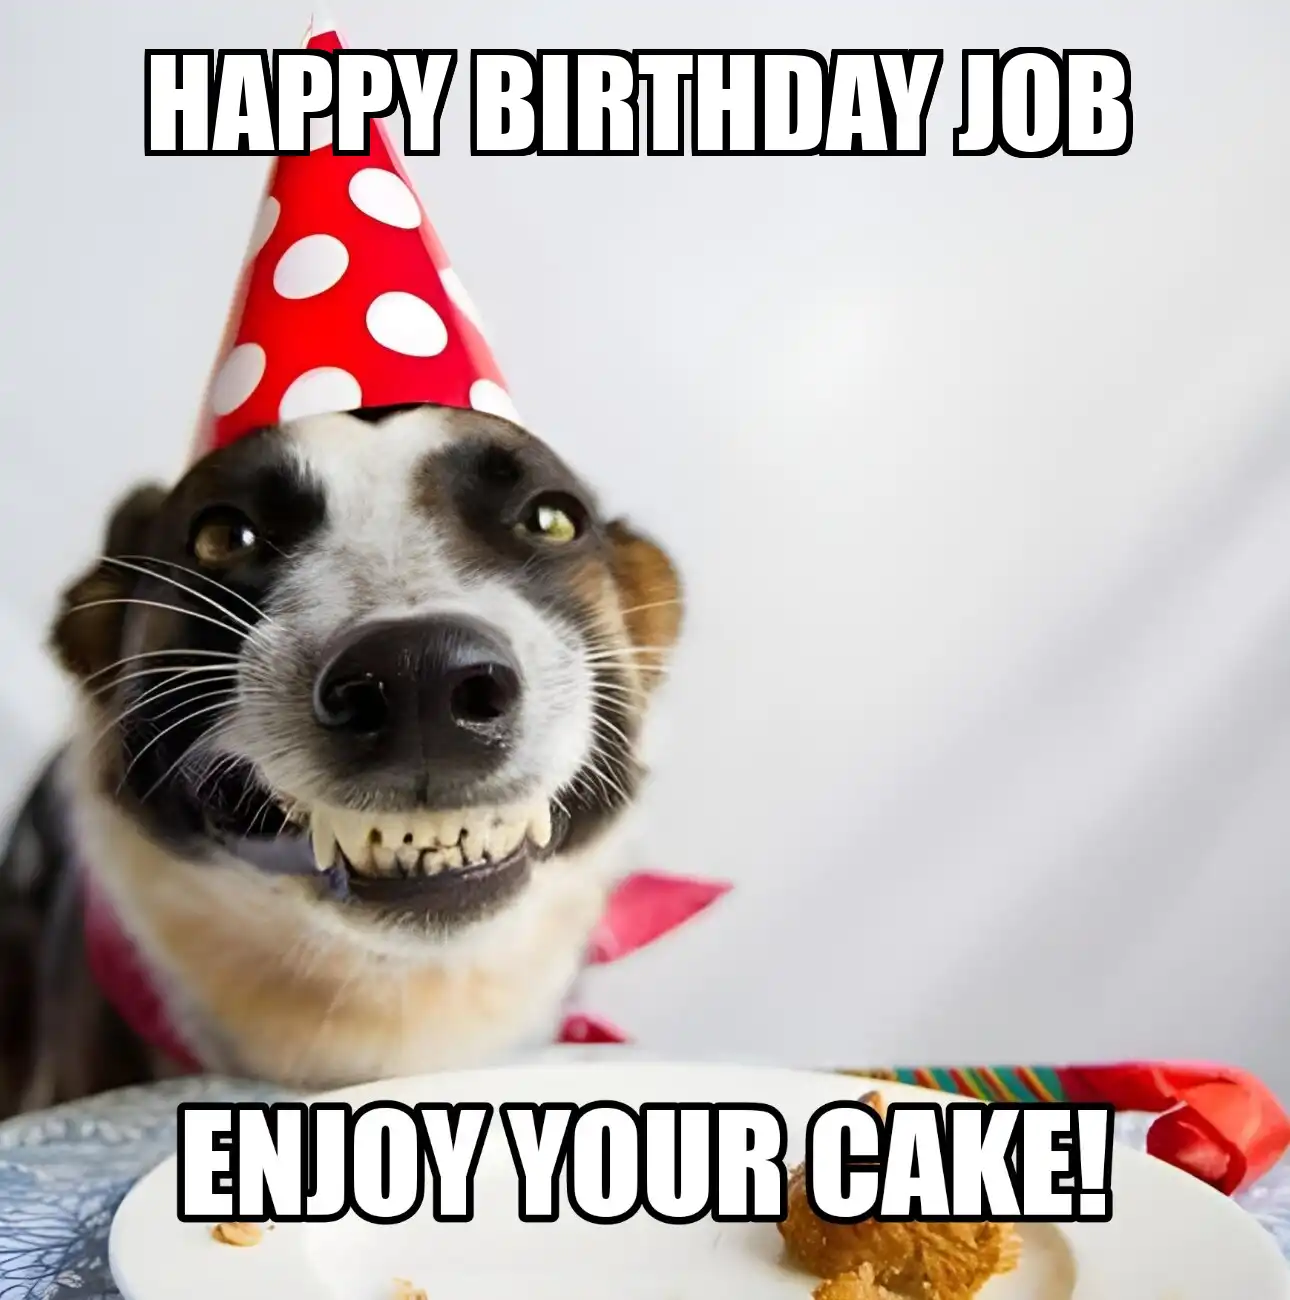 Happy Birthday Job Enjoy Your Cake Dog Meme